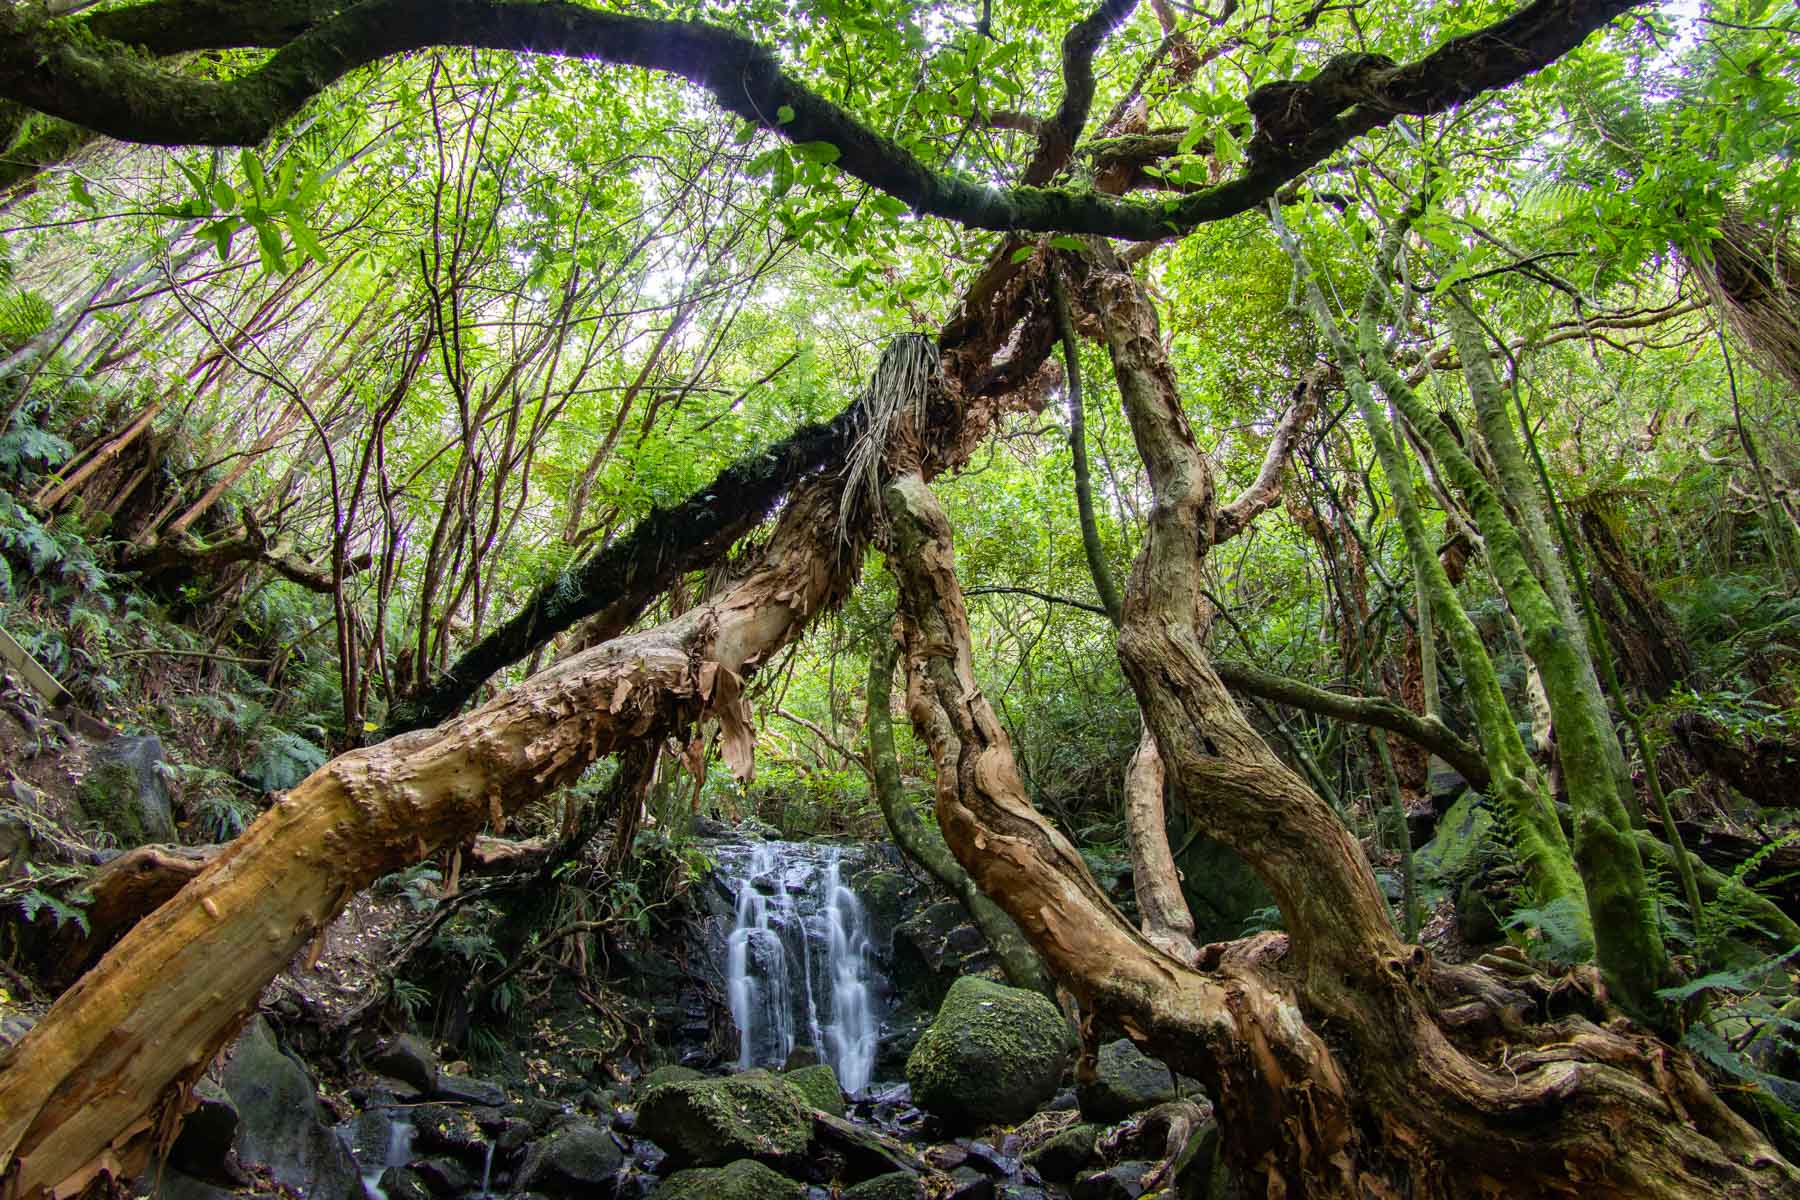 Au cœur d’une forêt verdoyante, des arbres tortueux s’élancent vers les hauteurs alors qu’une cascade coule le long d’une petite falaise.